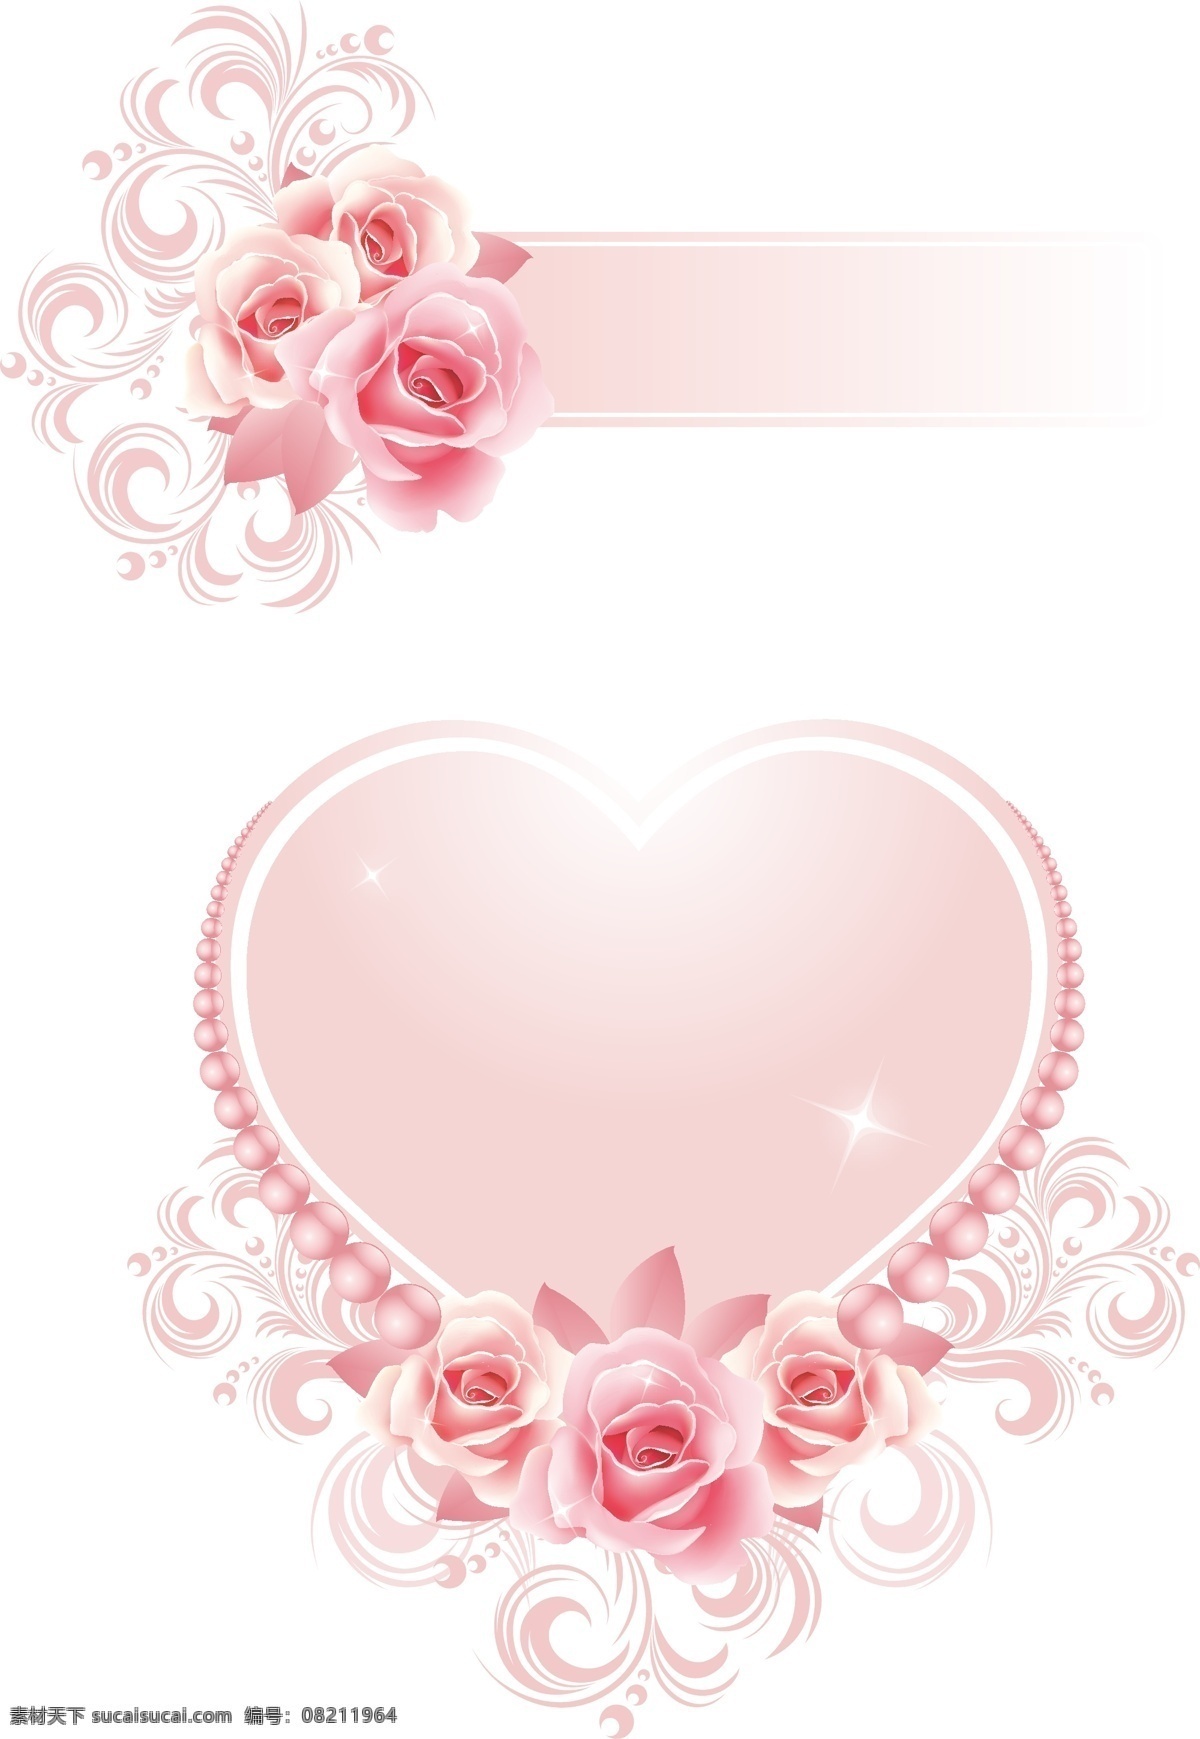 粉色 玫瑰 心形 图案 情人节 元素 花纹 精美 玫瑰花 梦幻 模板 情人节元素 设计稿 装饰 节日大全 源文件 节日素材